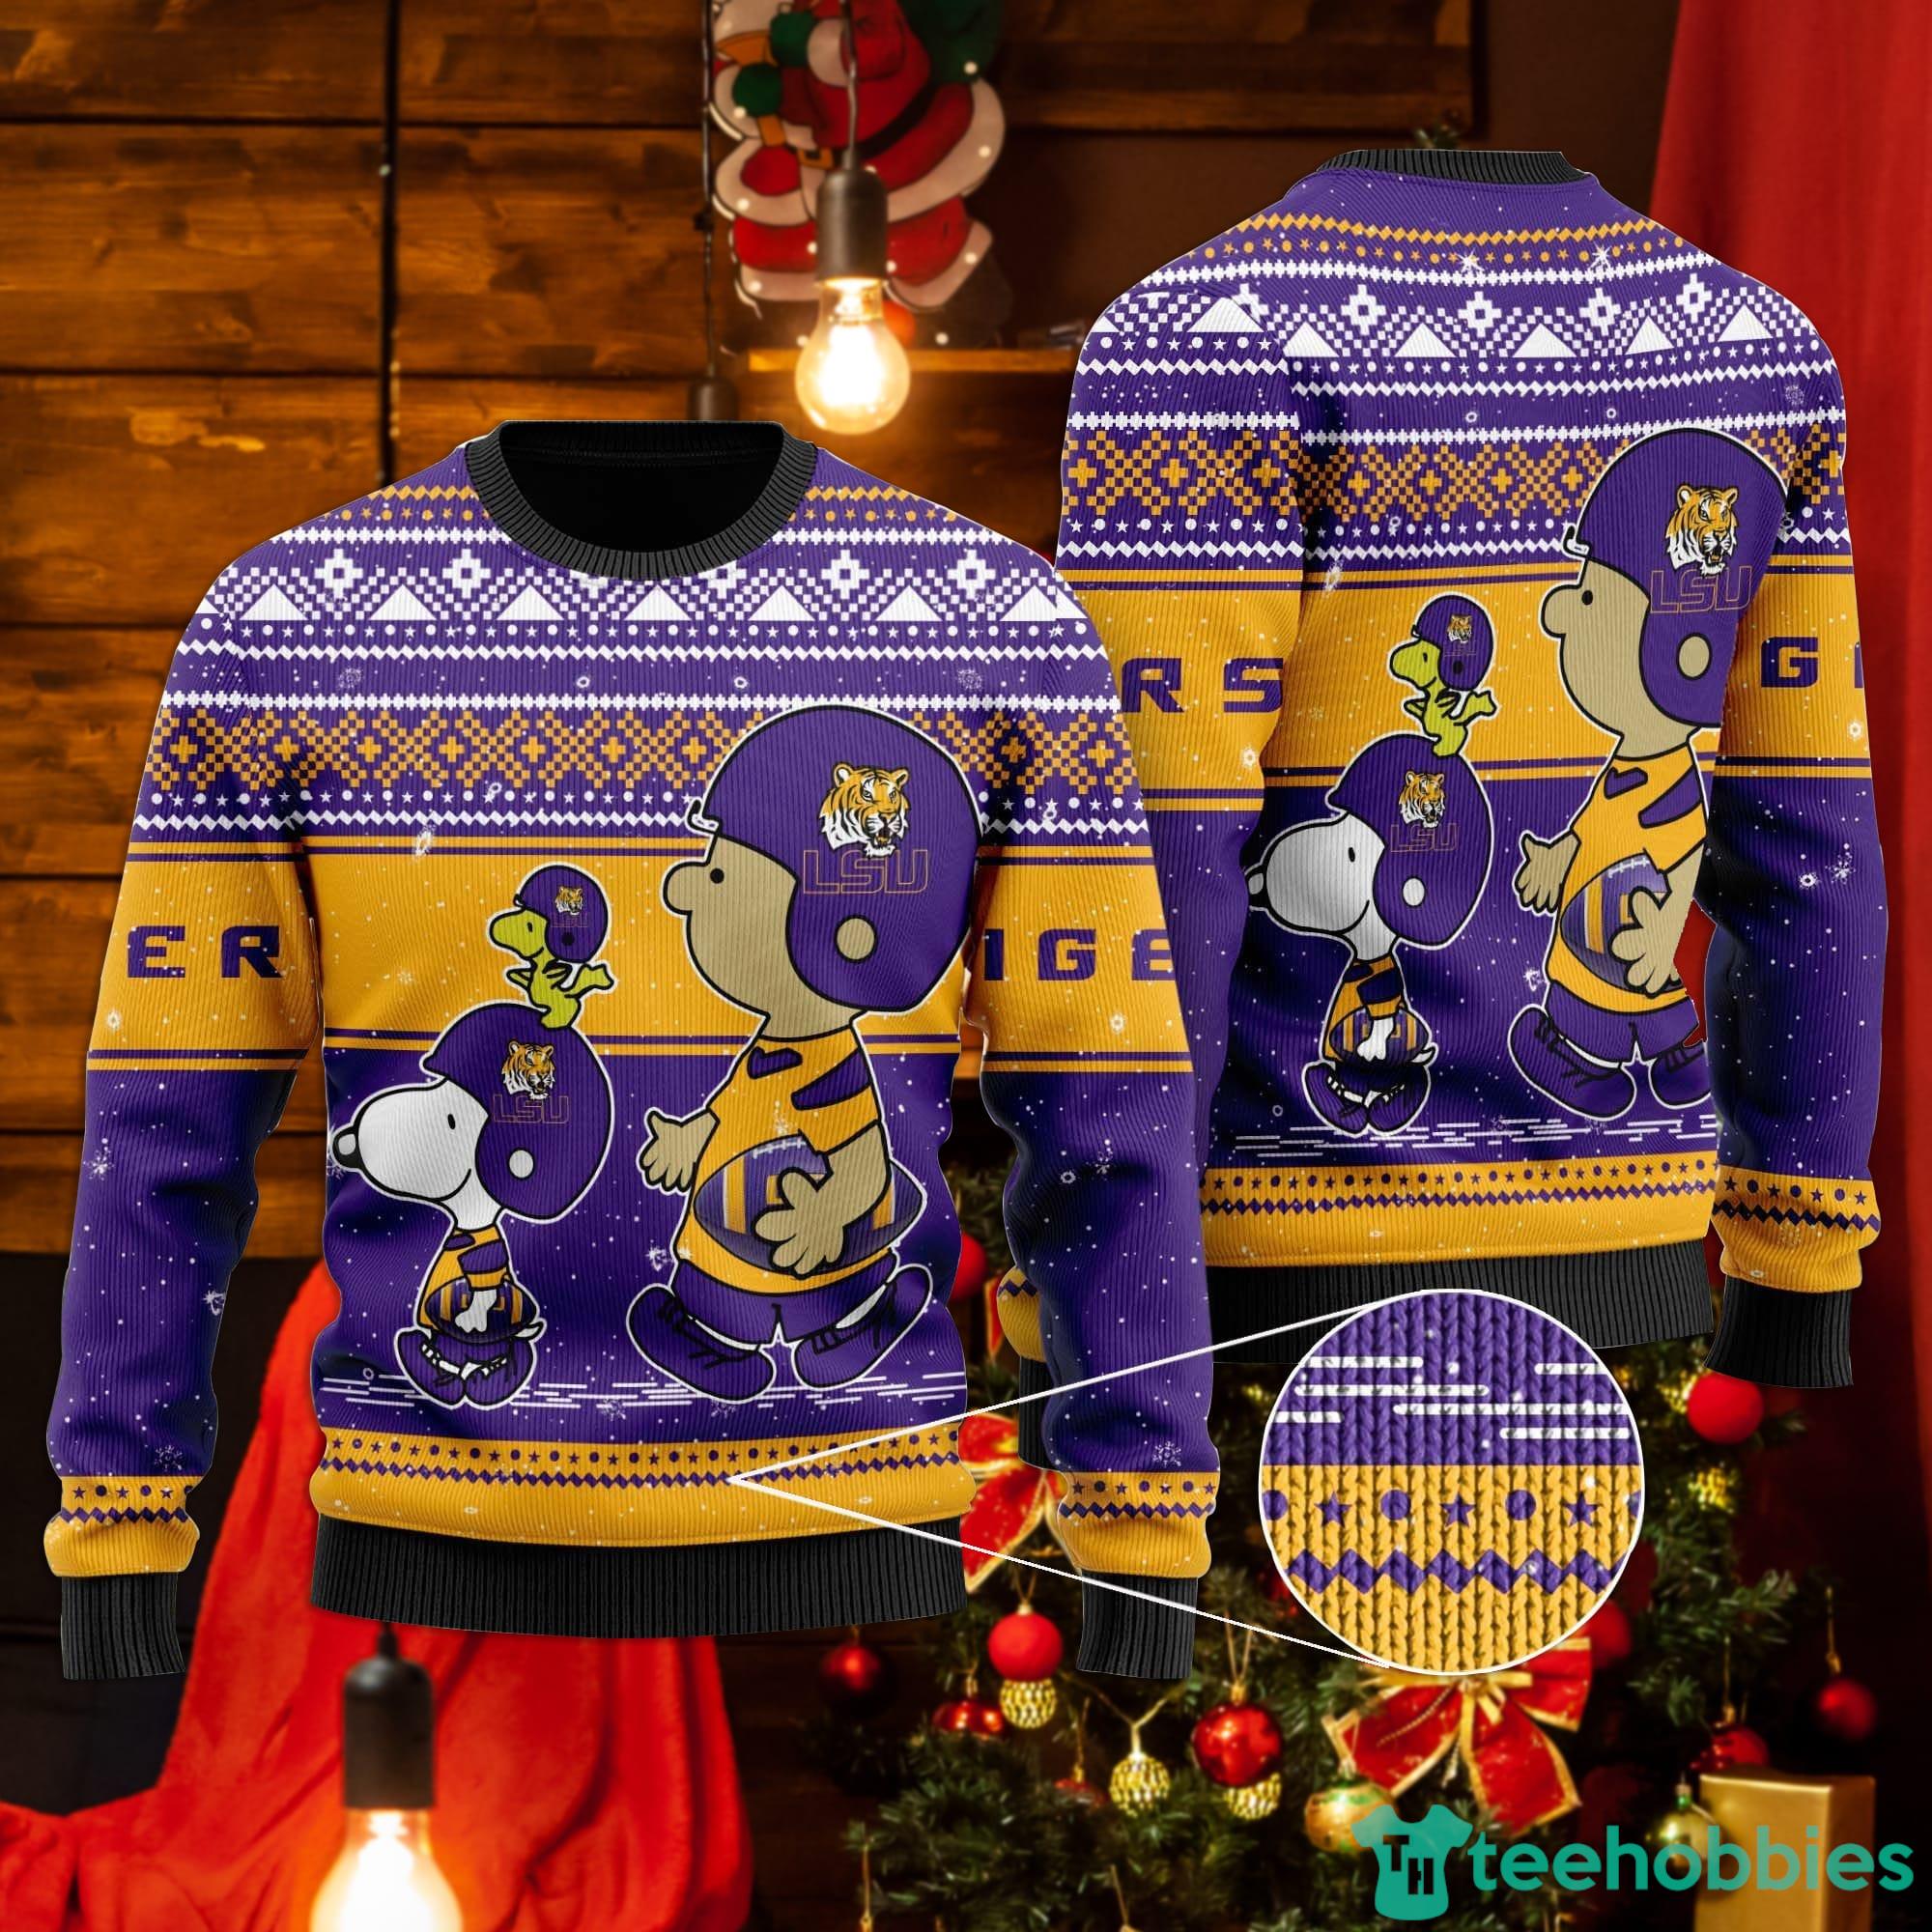 Houston Astros Pub Dog Christmas Ugly Sweater - Shibtee Clothing